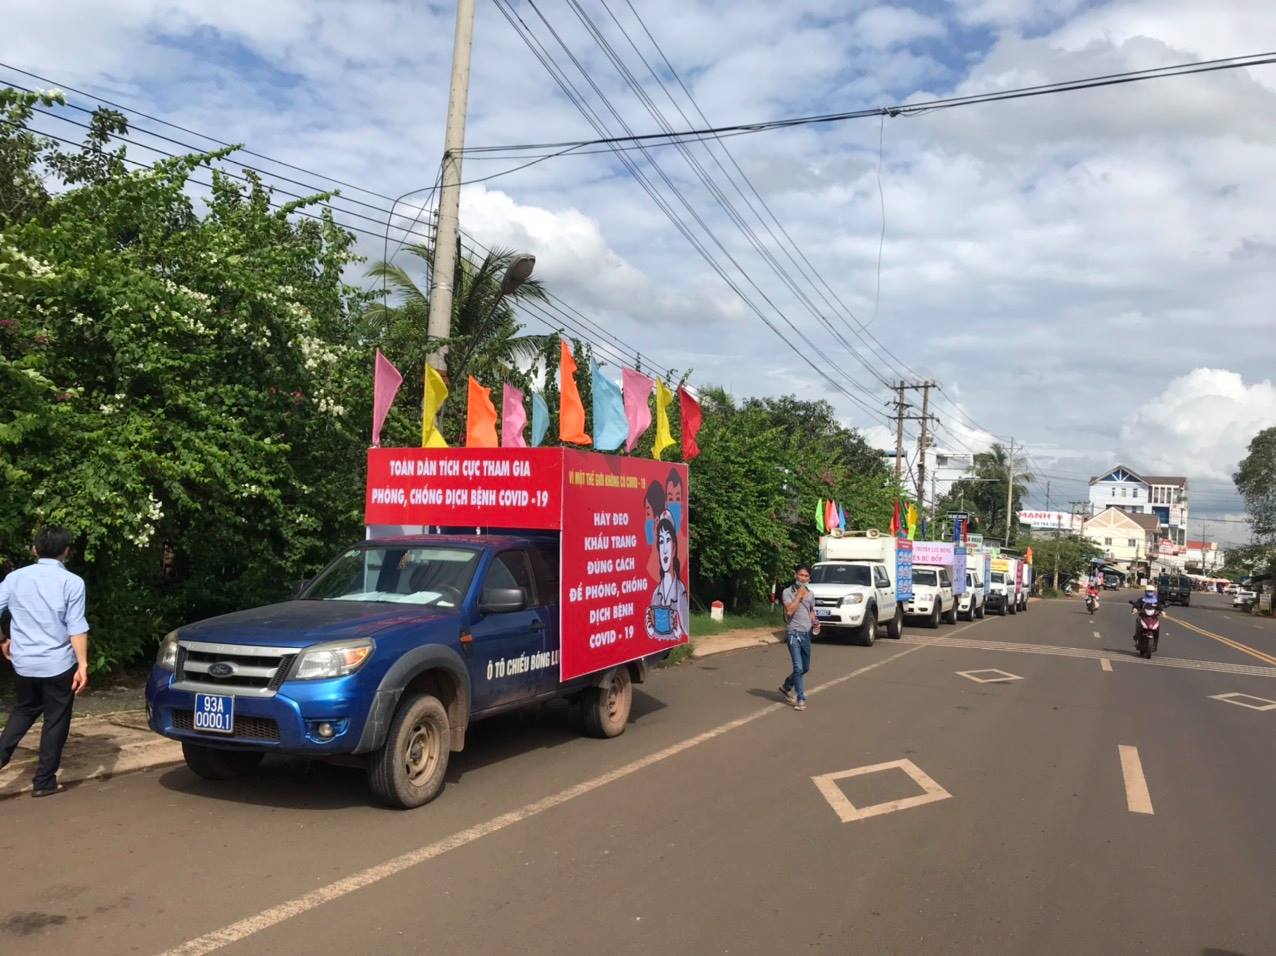 Đoàn xe tuyên truyền trên địa bàn huyện Lộc Ninh